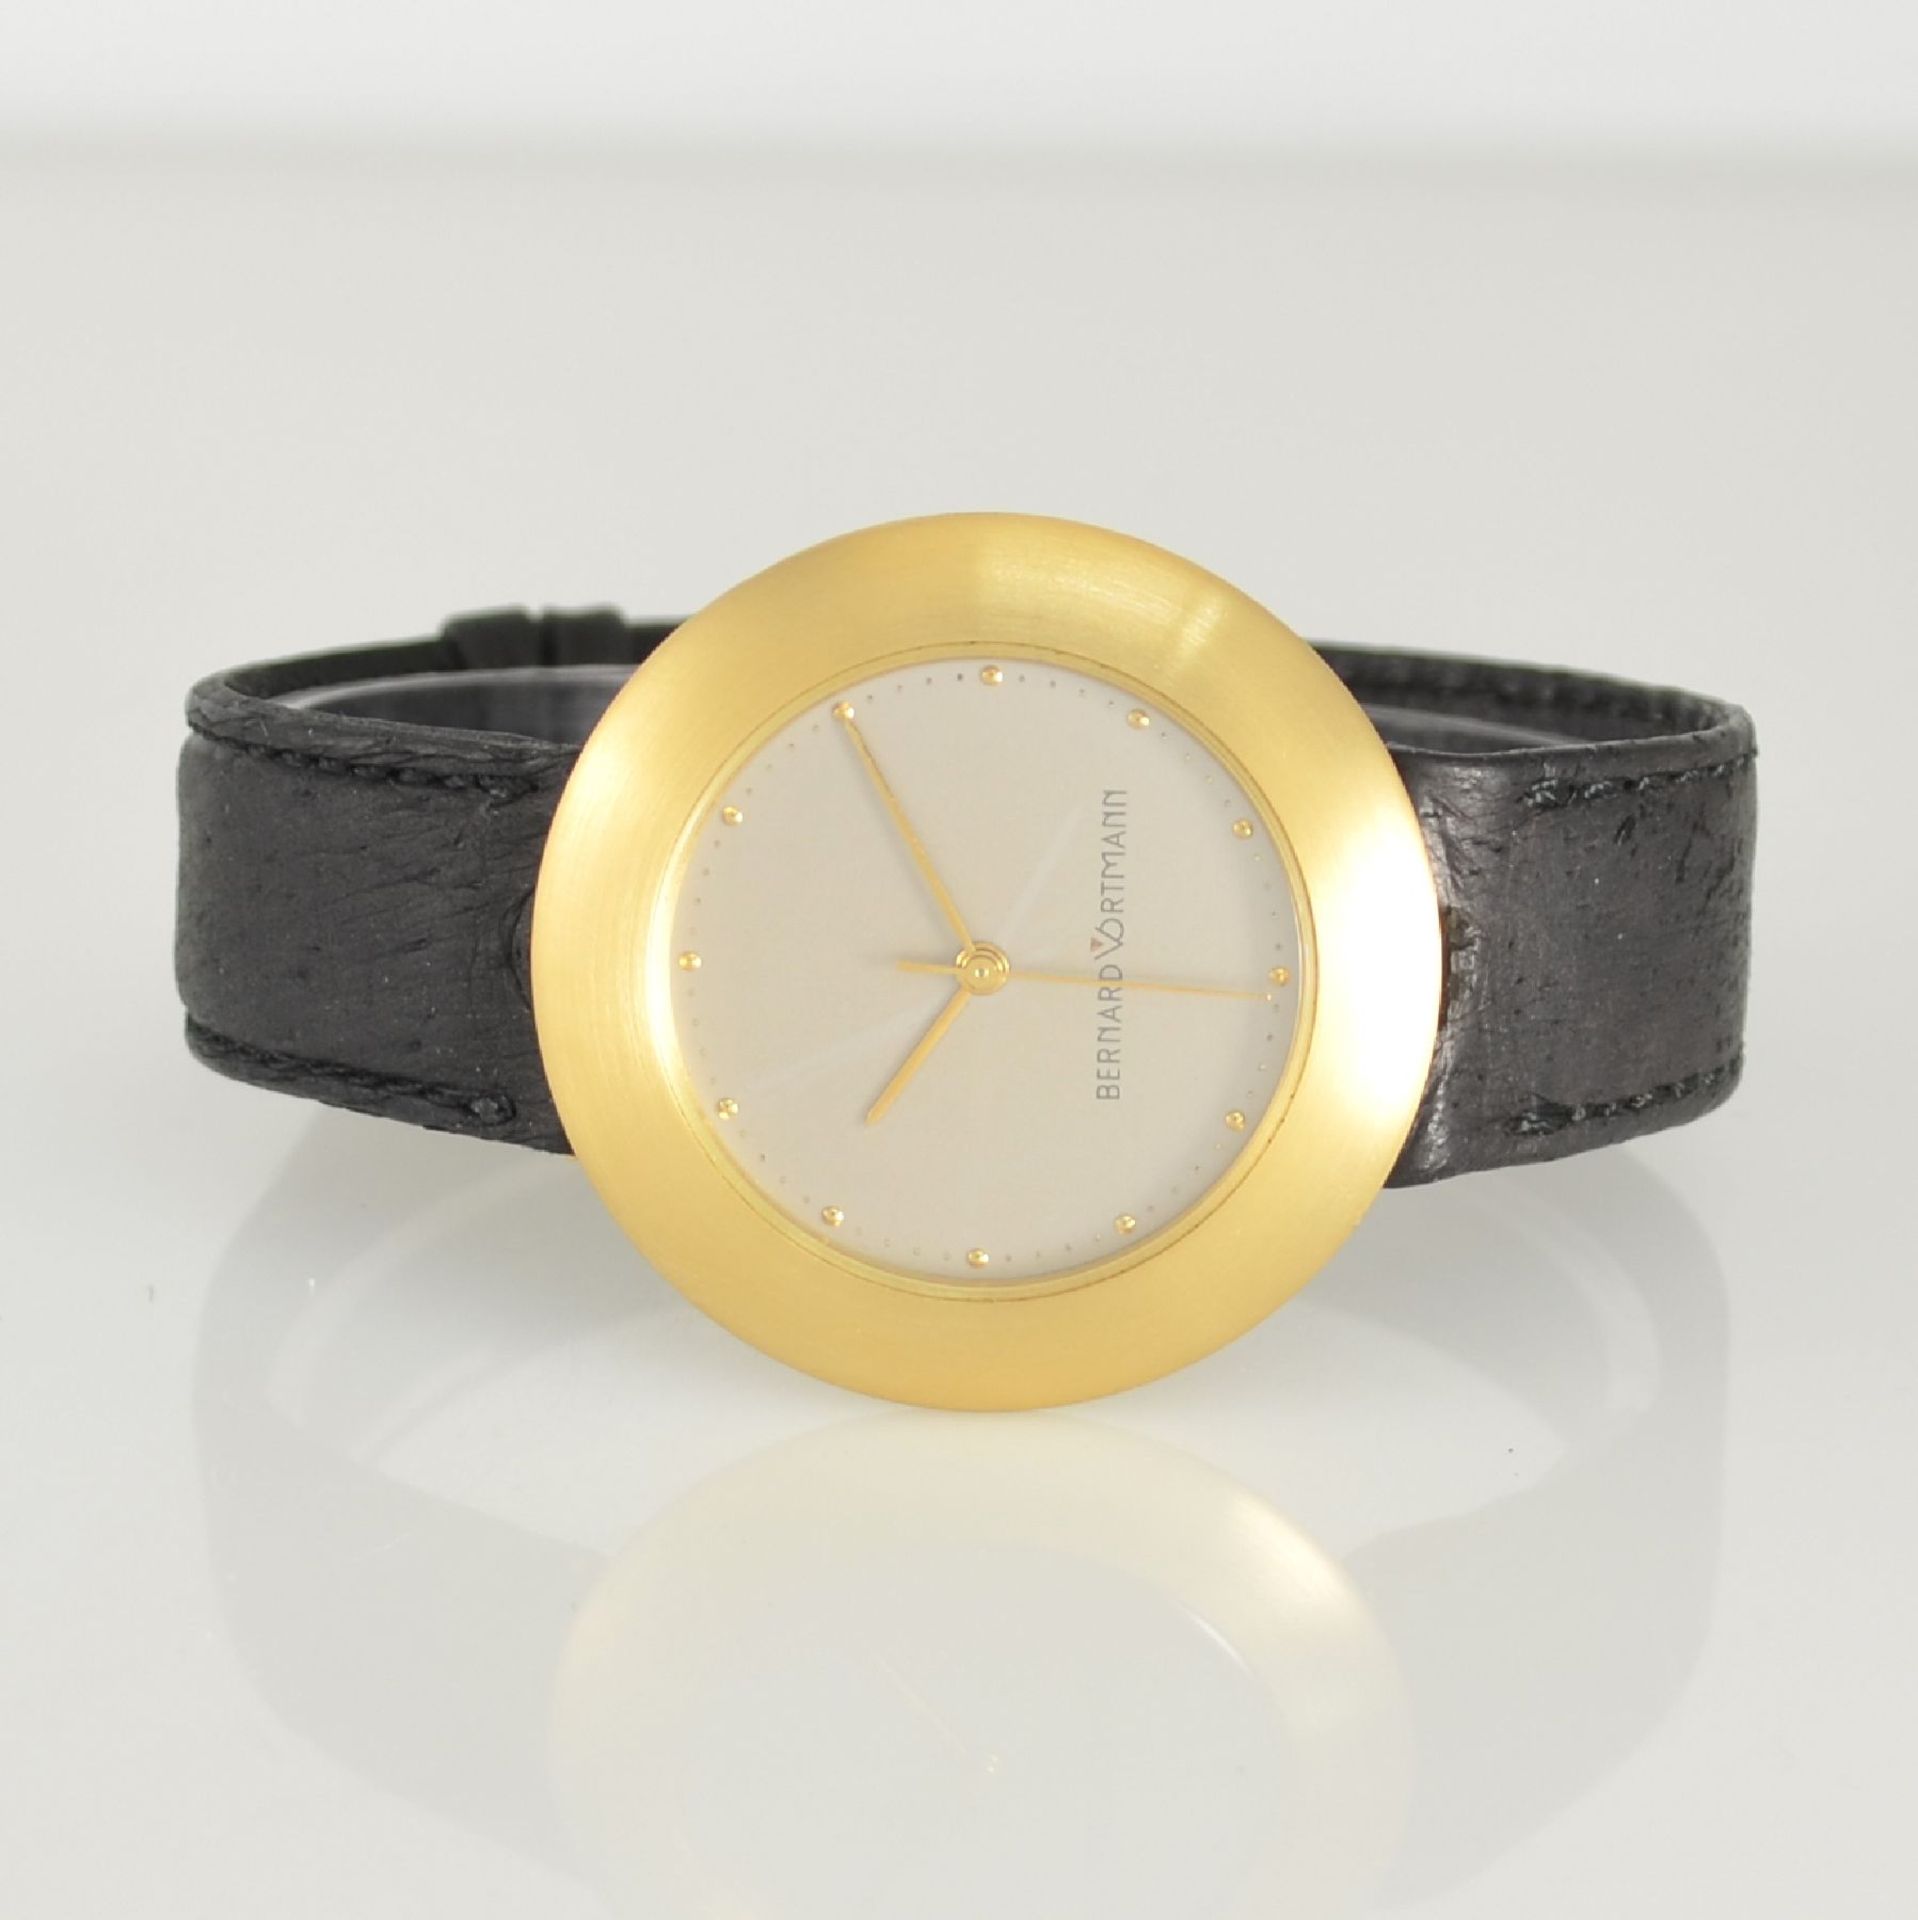 BERNARD VORTMANN Armbanduhr in GG 750/000, Schweiz um 1995, Automatik, Glasboden aufgedr., silb.